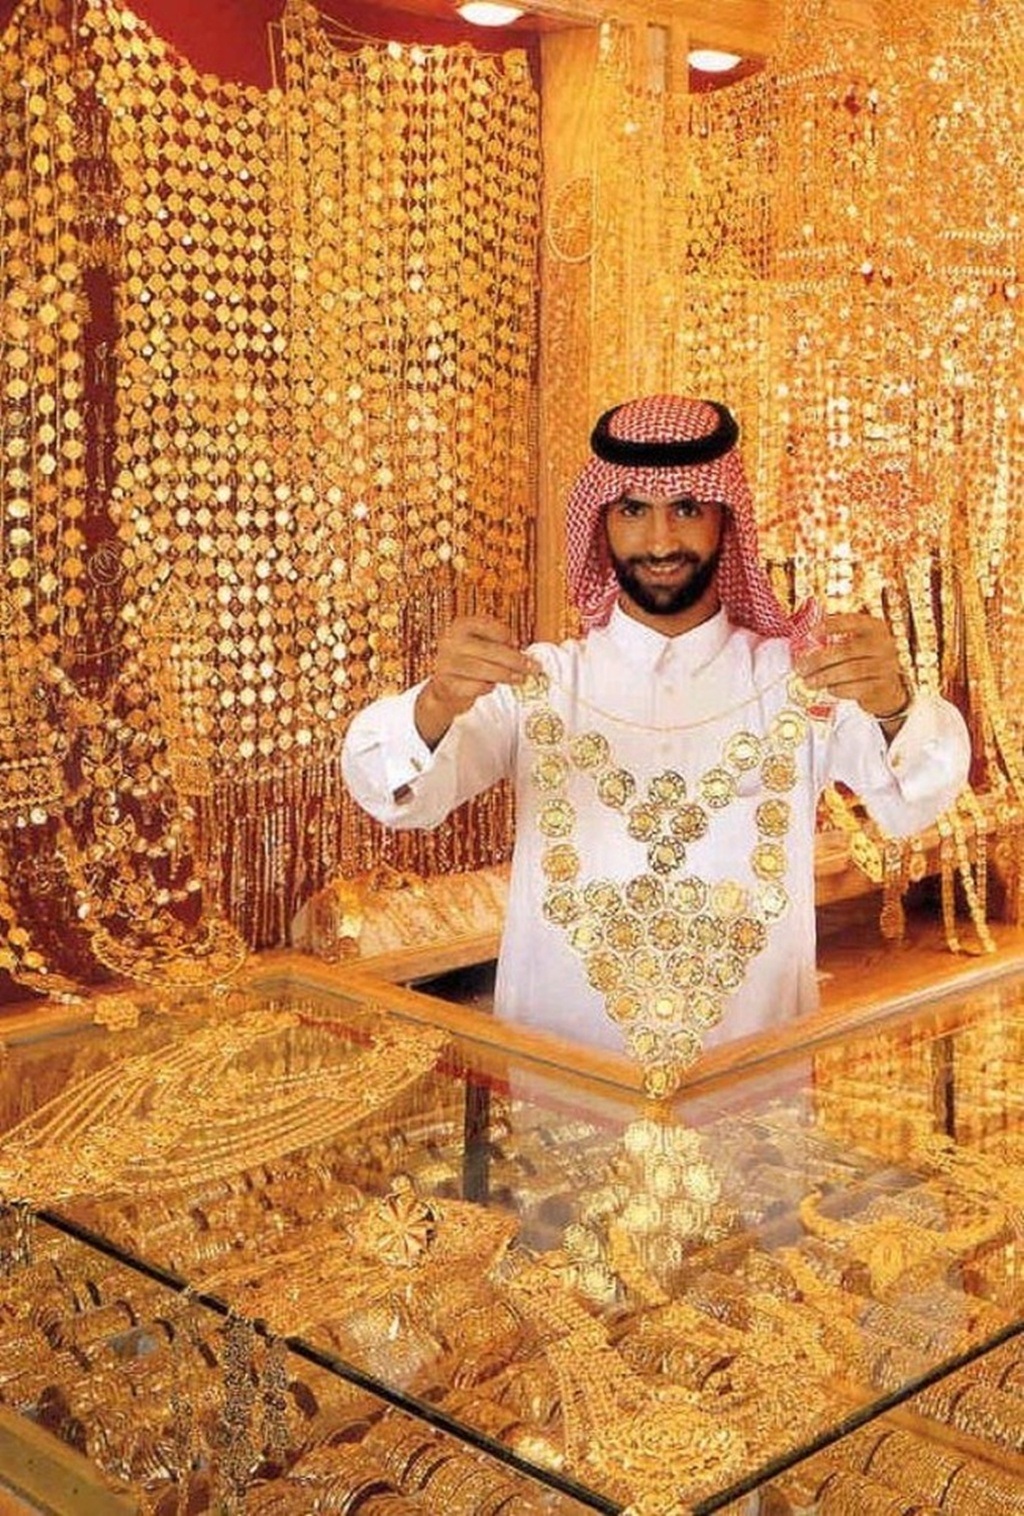 Nguyên Khang ăn bánh dát vàng, thăm nhà chọc trời ở Dubai